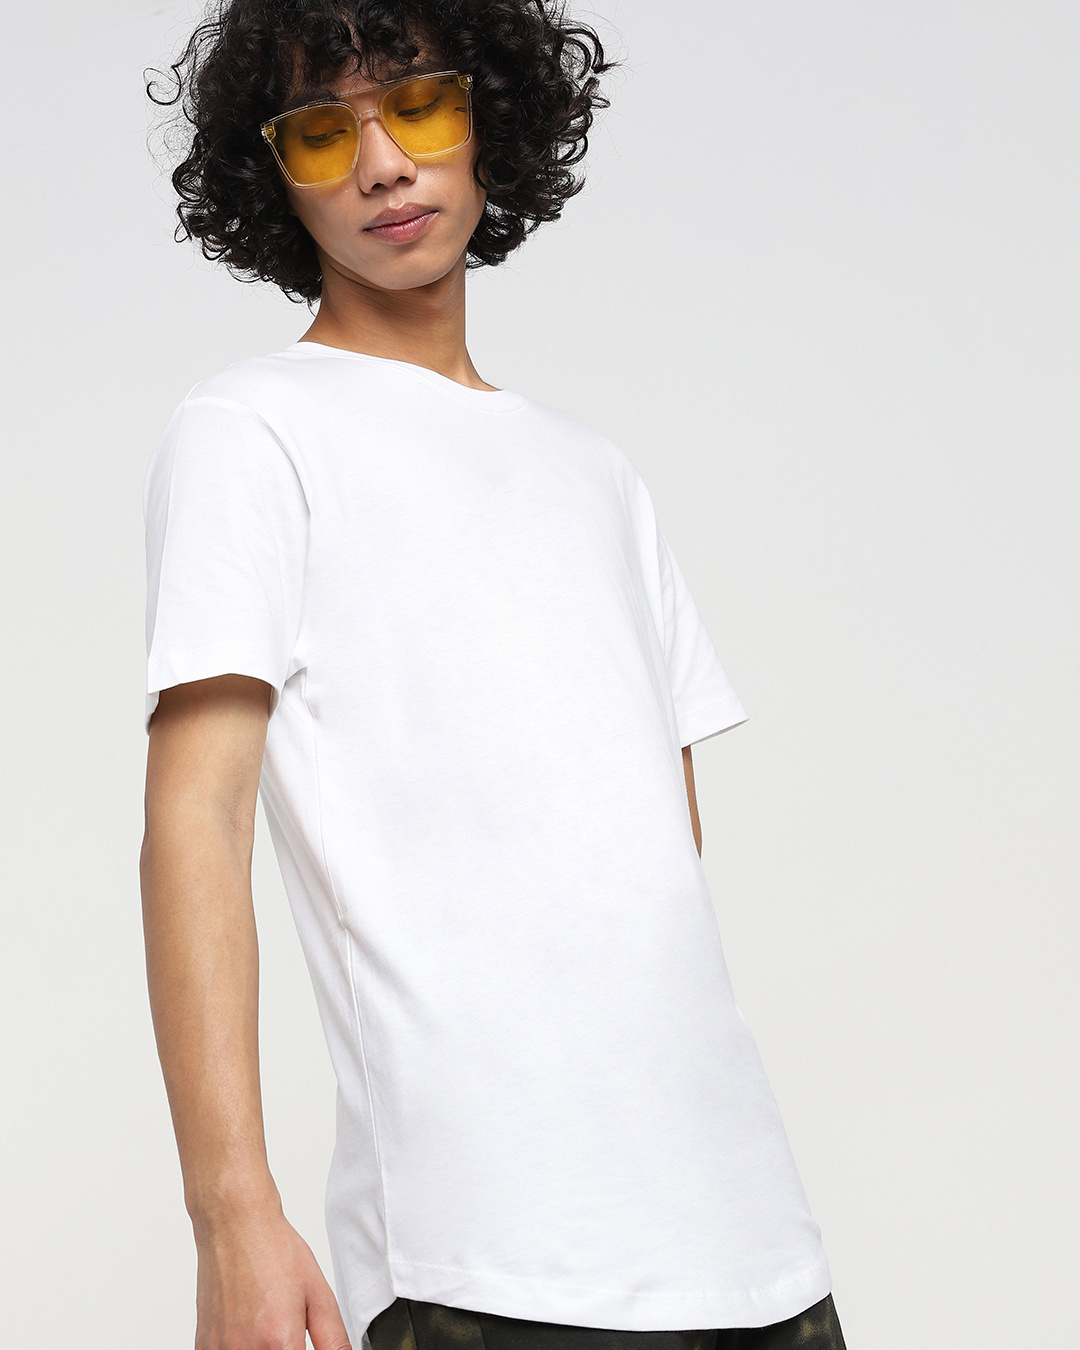 Buy White Half Sleeve Apple Cut T-Shirt for Men white Online at Bewakoof